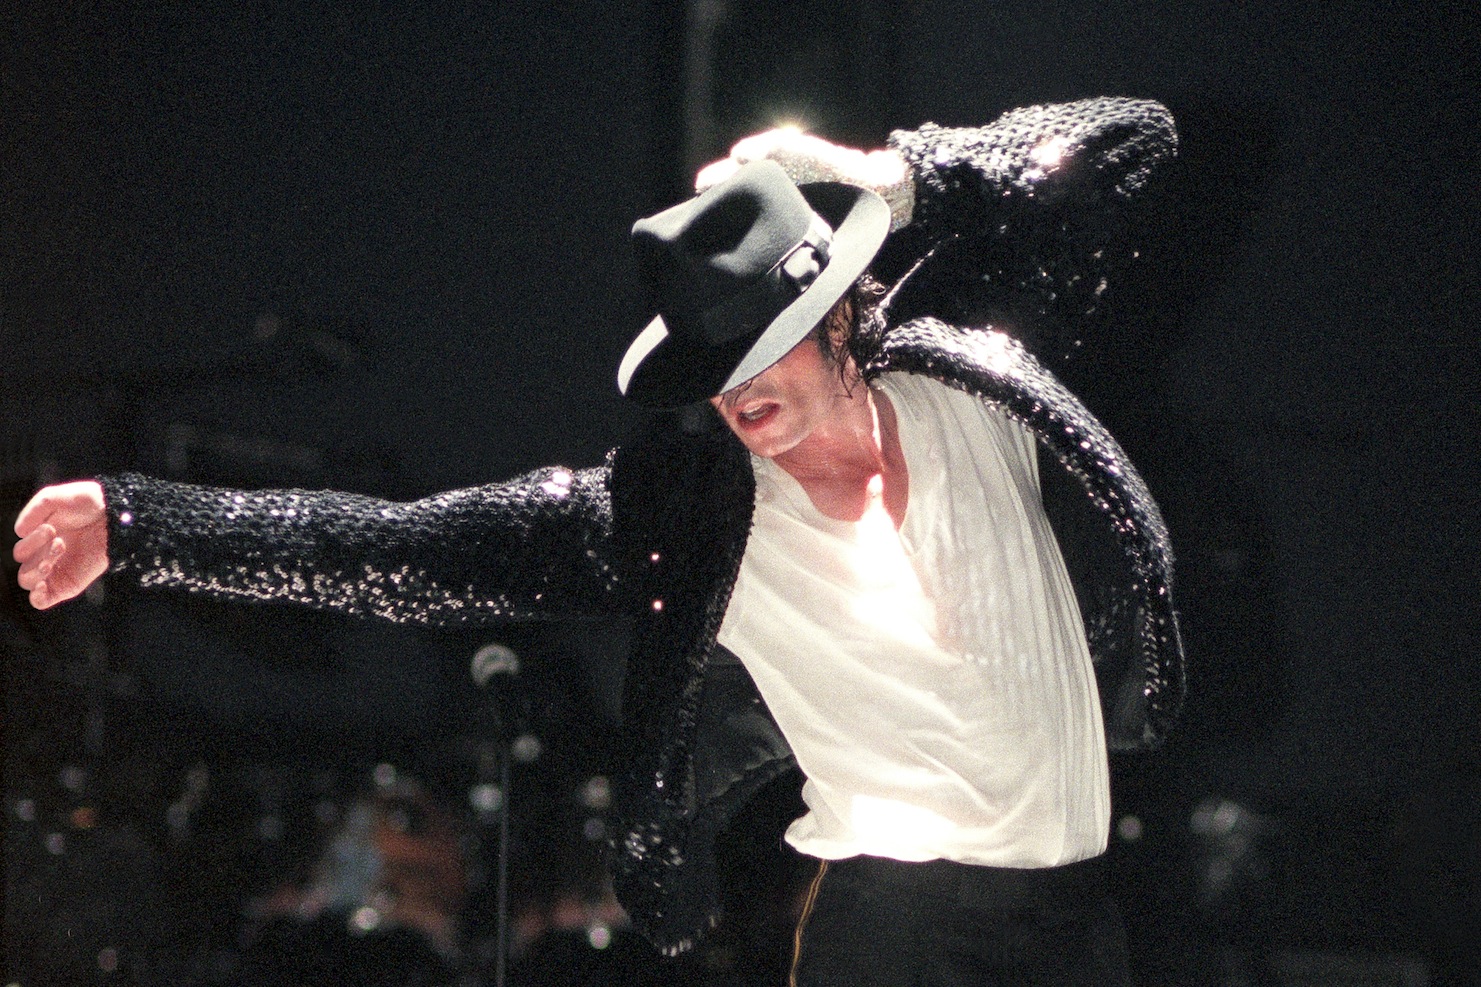 Michael Jackson sigue siendo un negocio altamente rentable para la industria del espectáculo